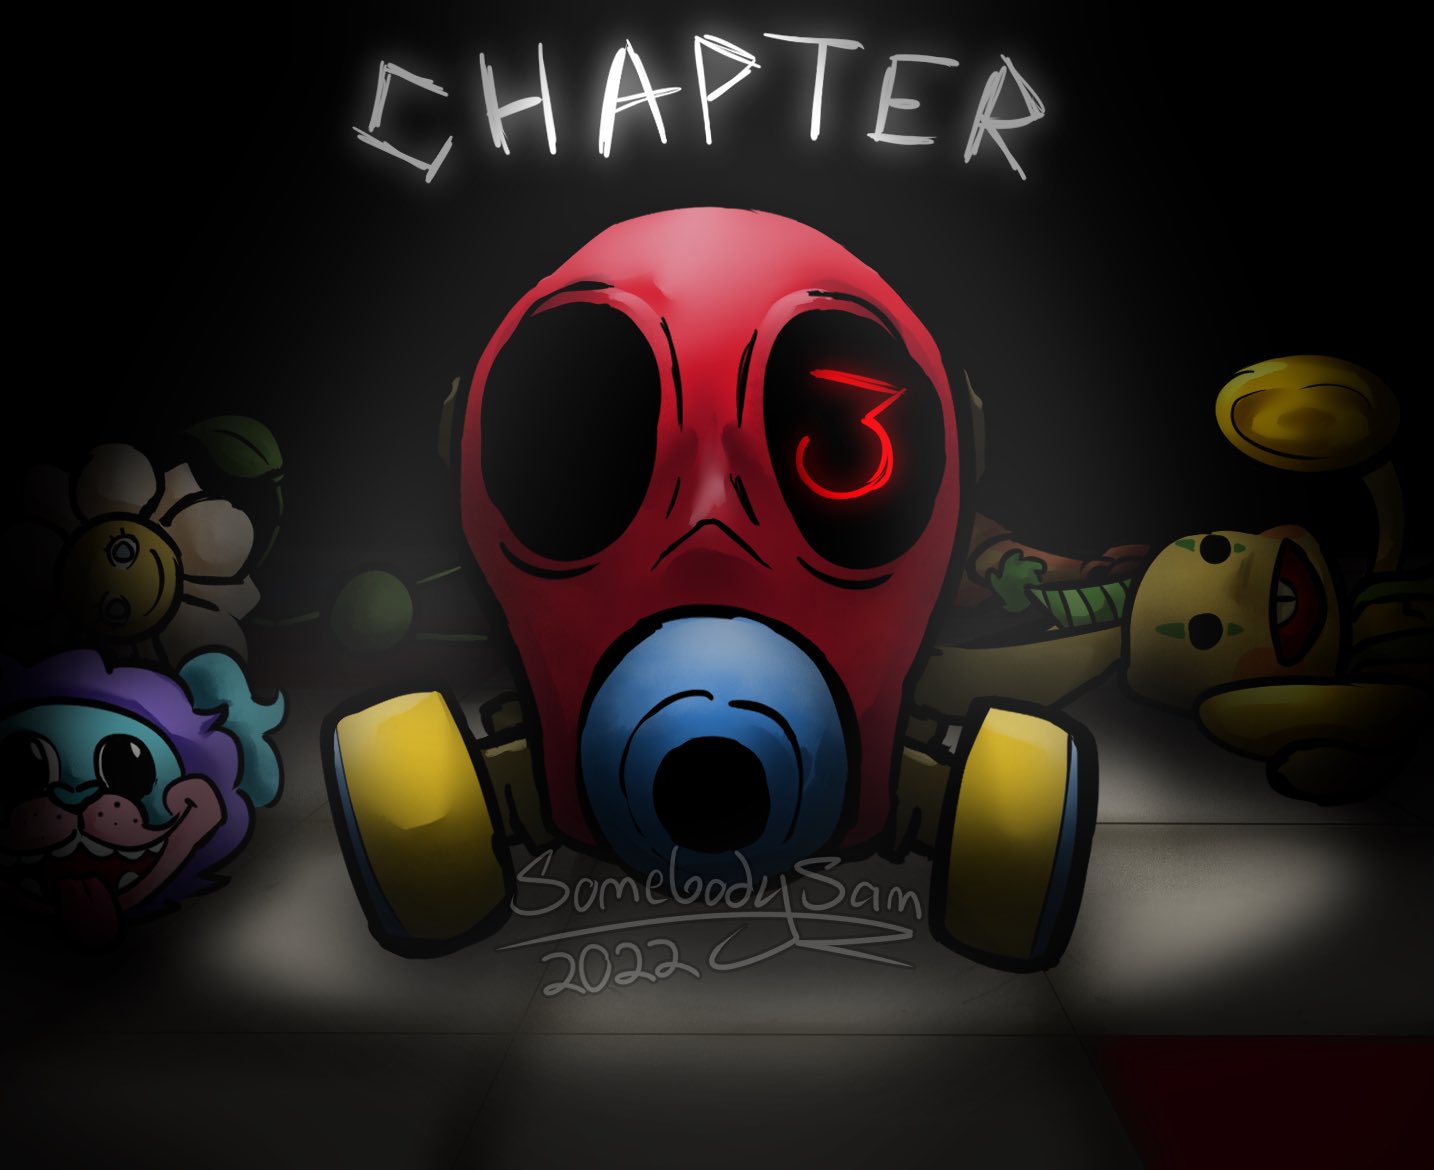 Poppy Playtime: Chapter 2 Treaser Trailer#poppyplaytimechapter2